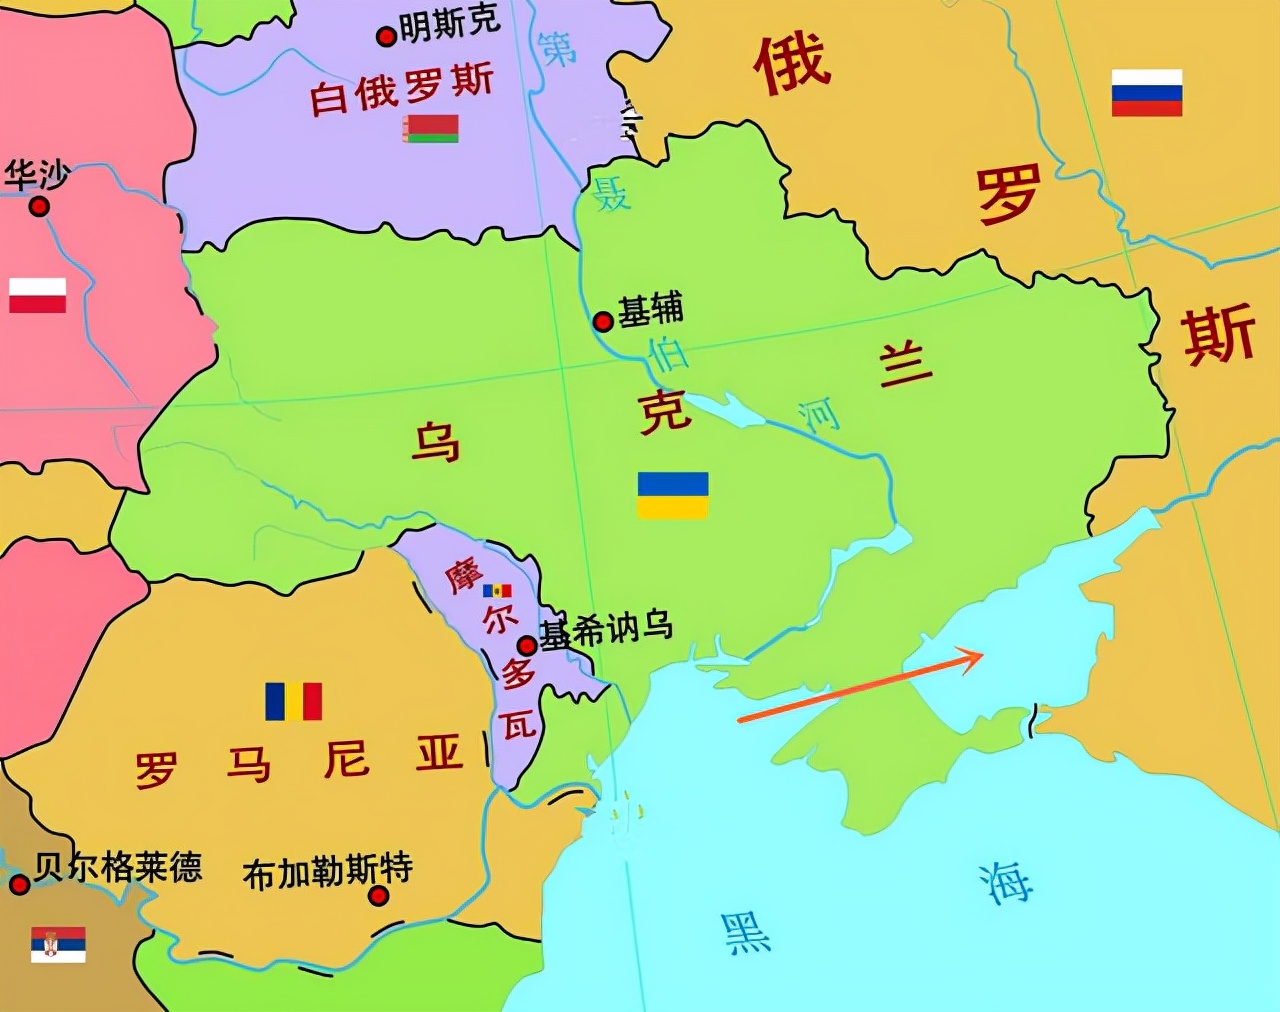 俄罗斯乌克兰地图划分